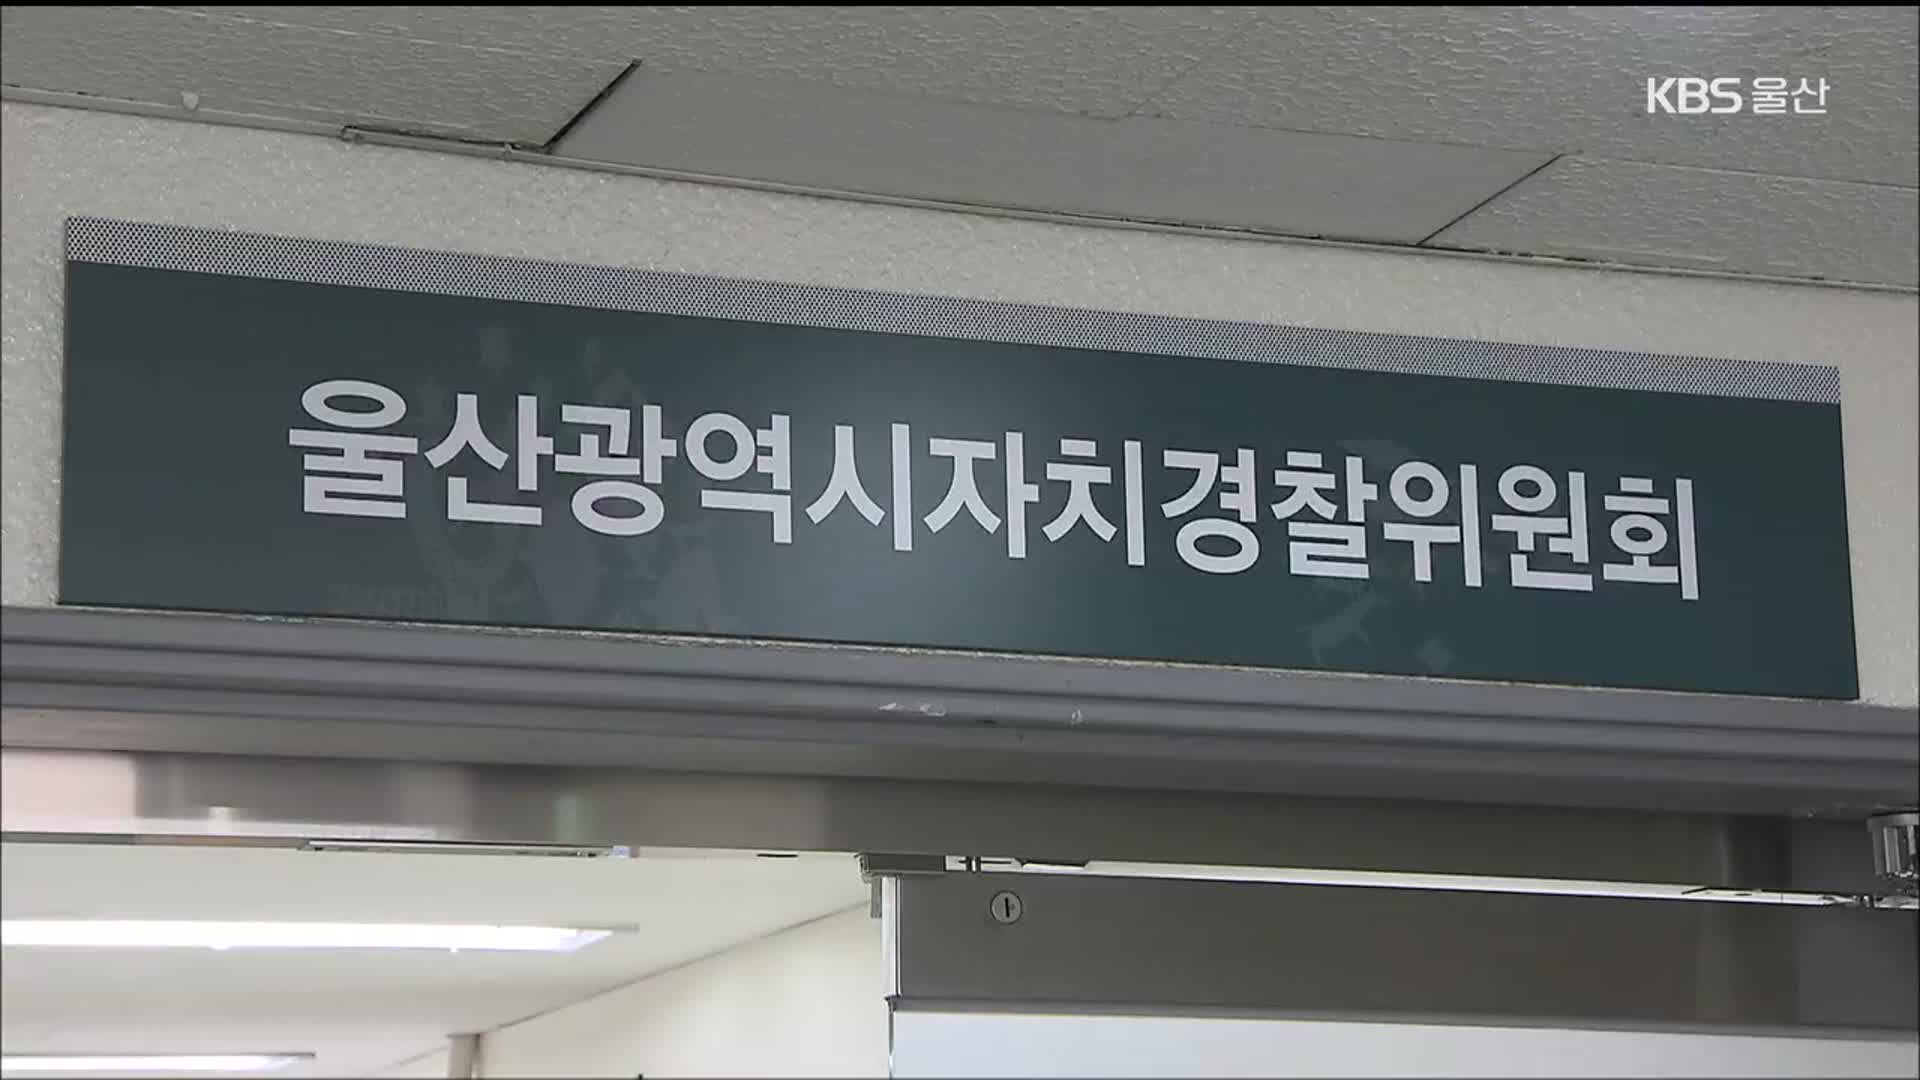 “울산자치경찰위원 소속 학과에 용역…이해충돌 여지”